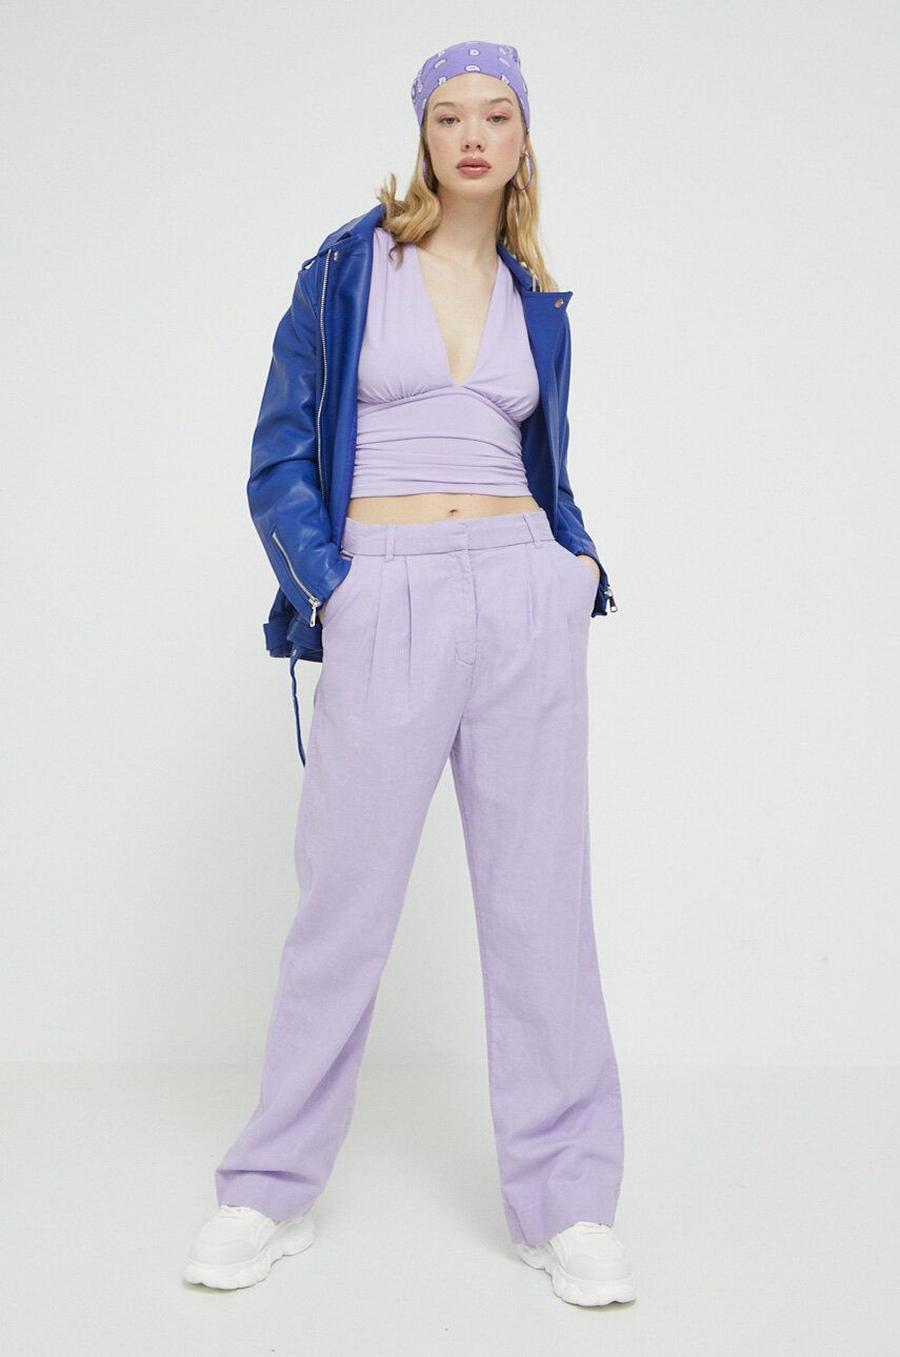 Plátěné kalhoty Abercrombie & Fitch fialová barva, široké, high waist